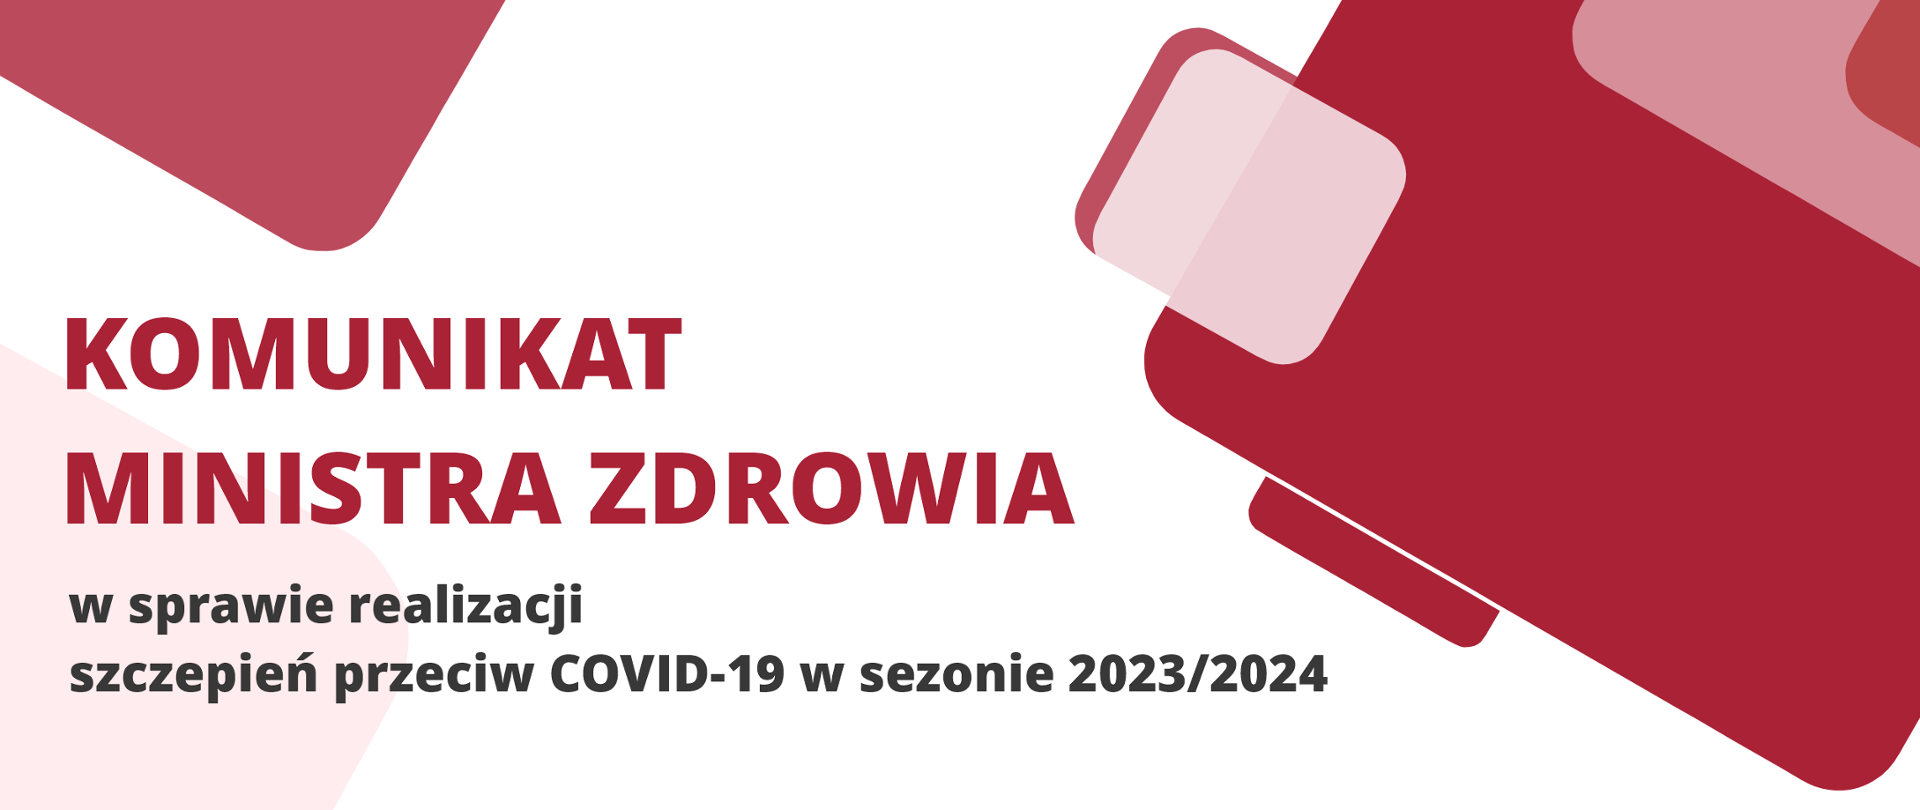 Komunikat Ministra Zdrowia w sprawie realizacji szczepień przeciw COVID-19 w sezonie 2023/2024